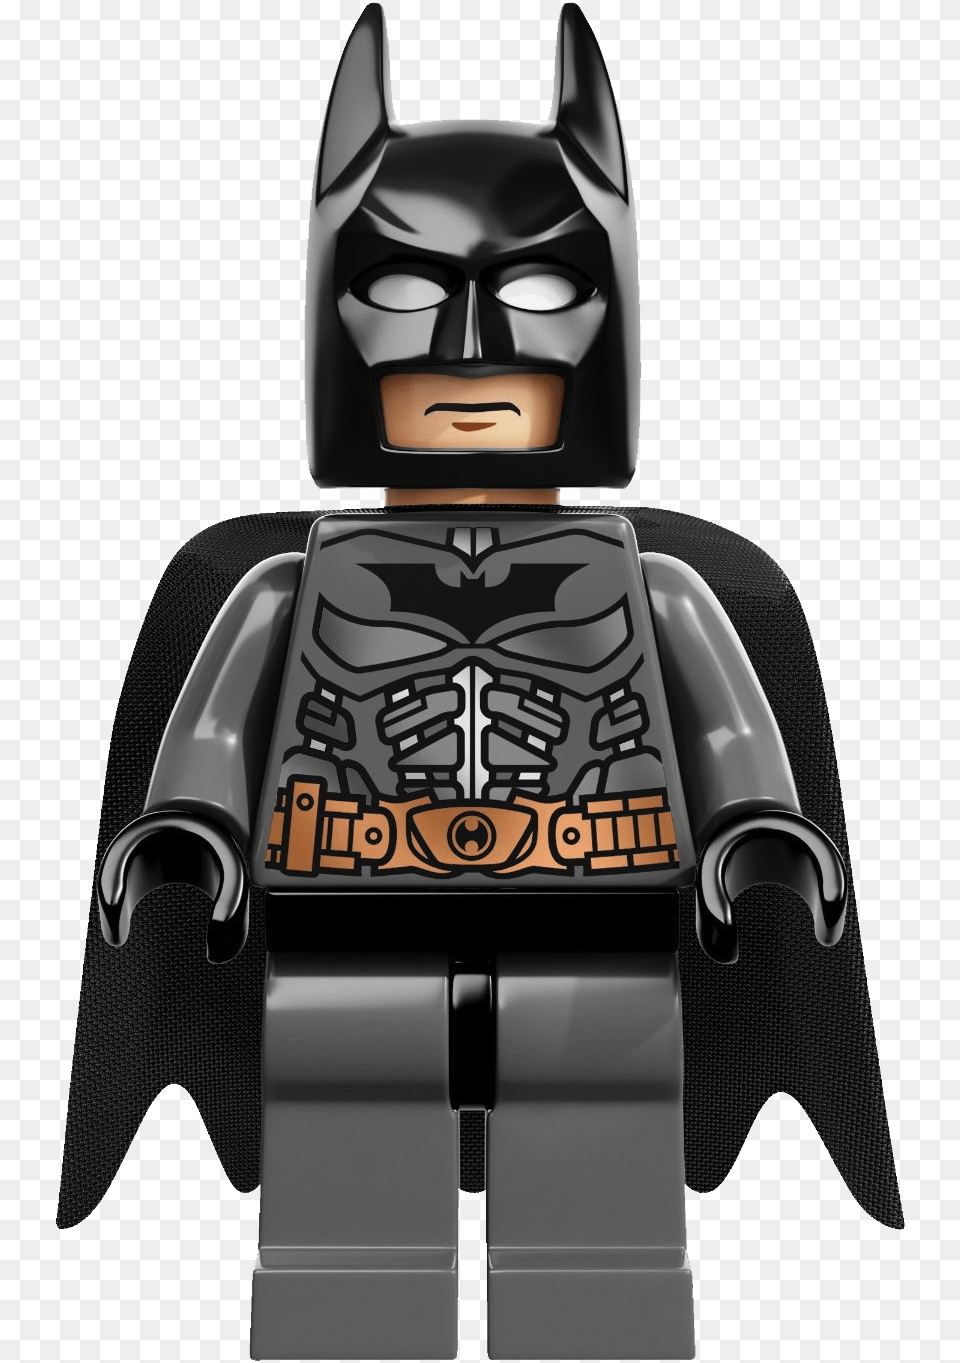 Batman Lego Super Heroes Clipart Dark Knight Rises Batman Lego, Adult, Female, Person, Woman Png Image